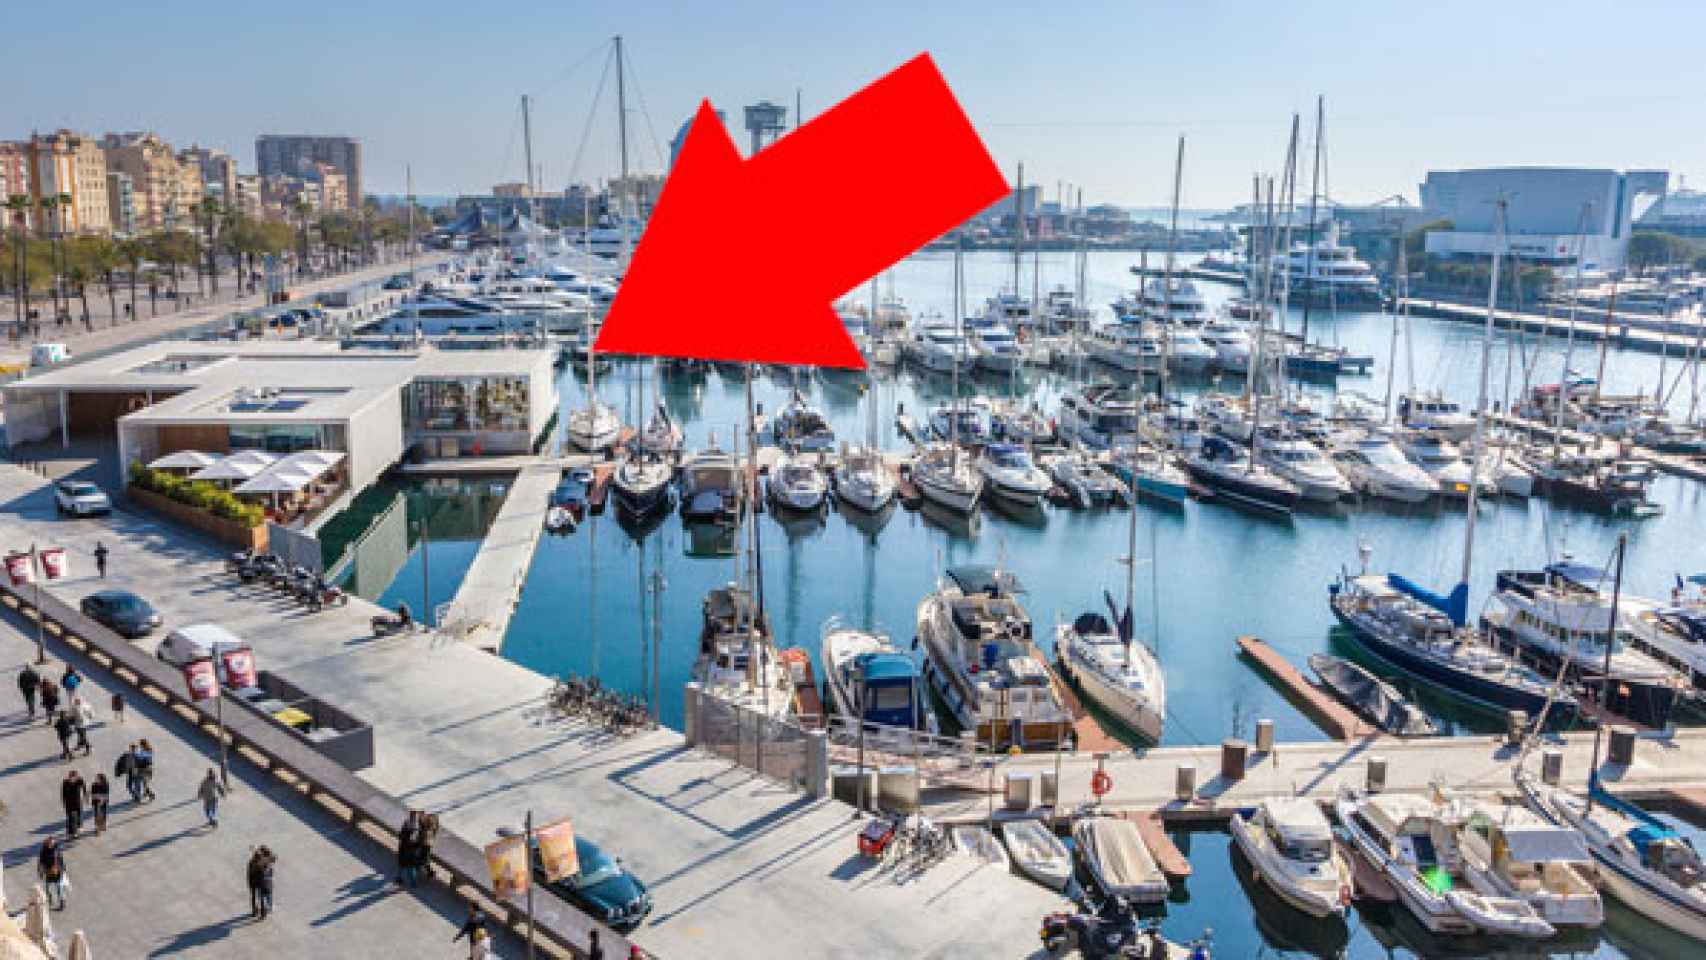 Vista general de la Marina Port Vell con el One Ocean Club señalado en rojo / FOTOMONTAJE CG